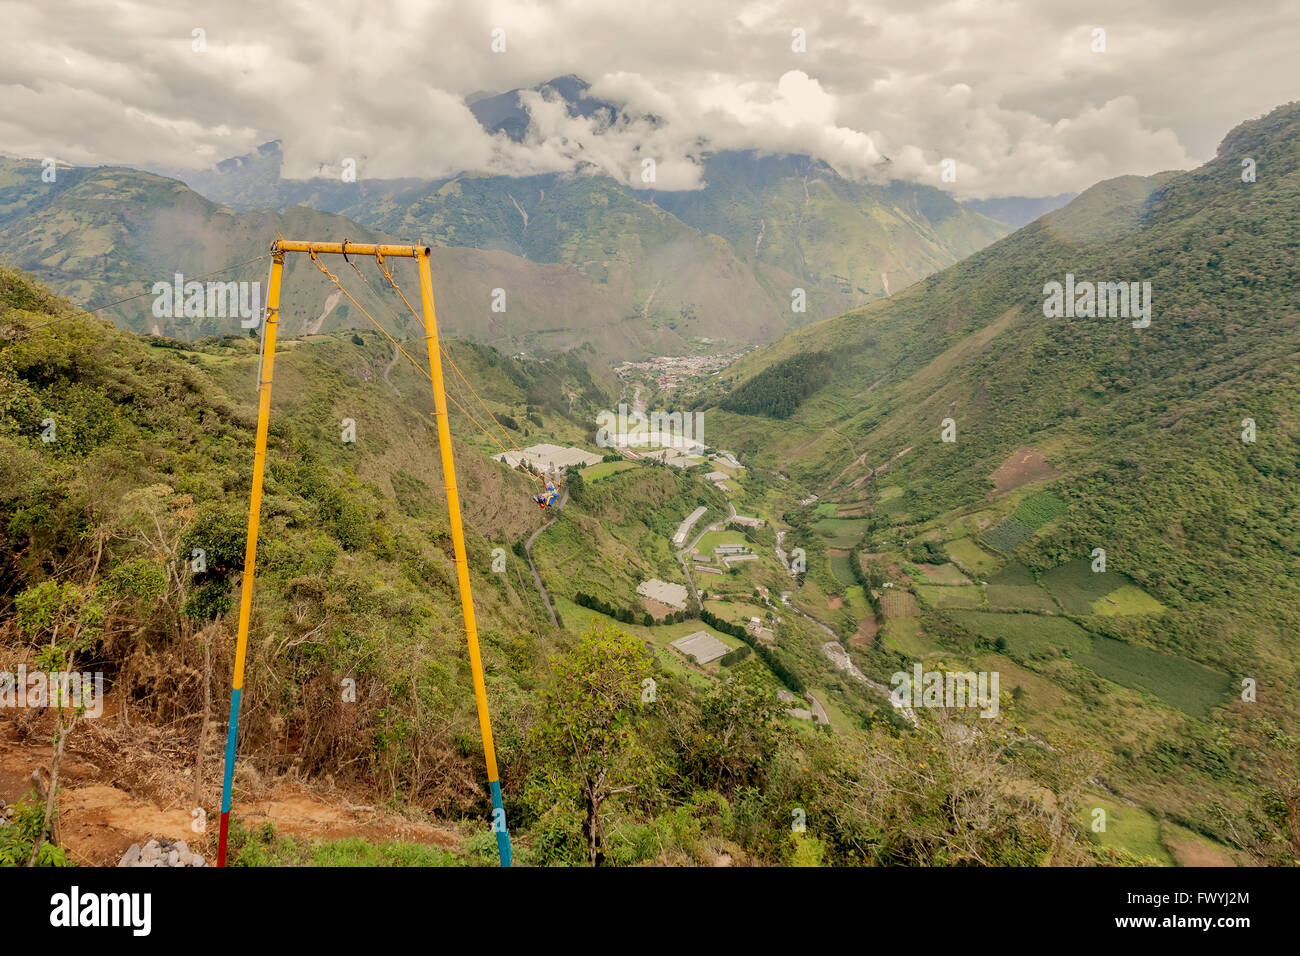 Professionnels des profils Caucasian Man Swinging sur une balançoire appelé Vol du Condor, Banos de Agua Santa, Equateur Banque D'Images